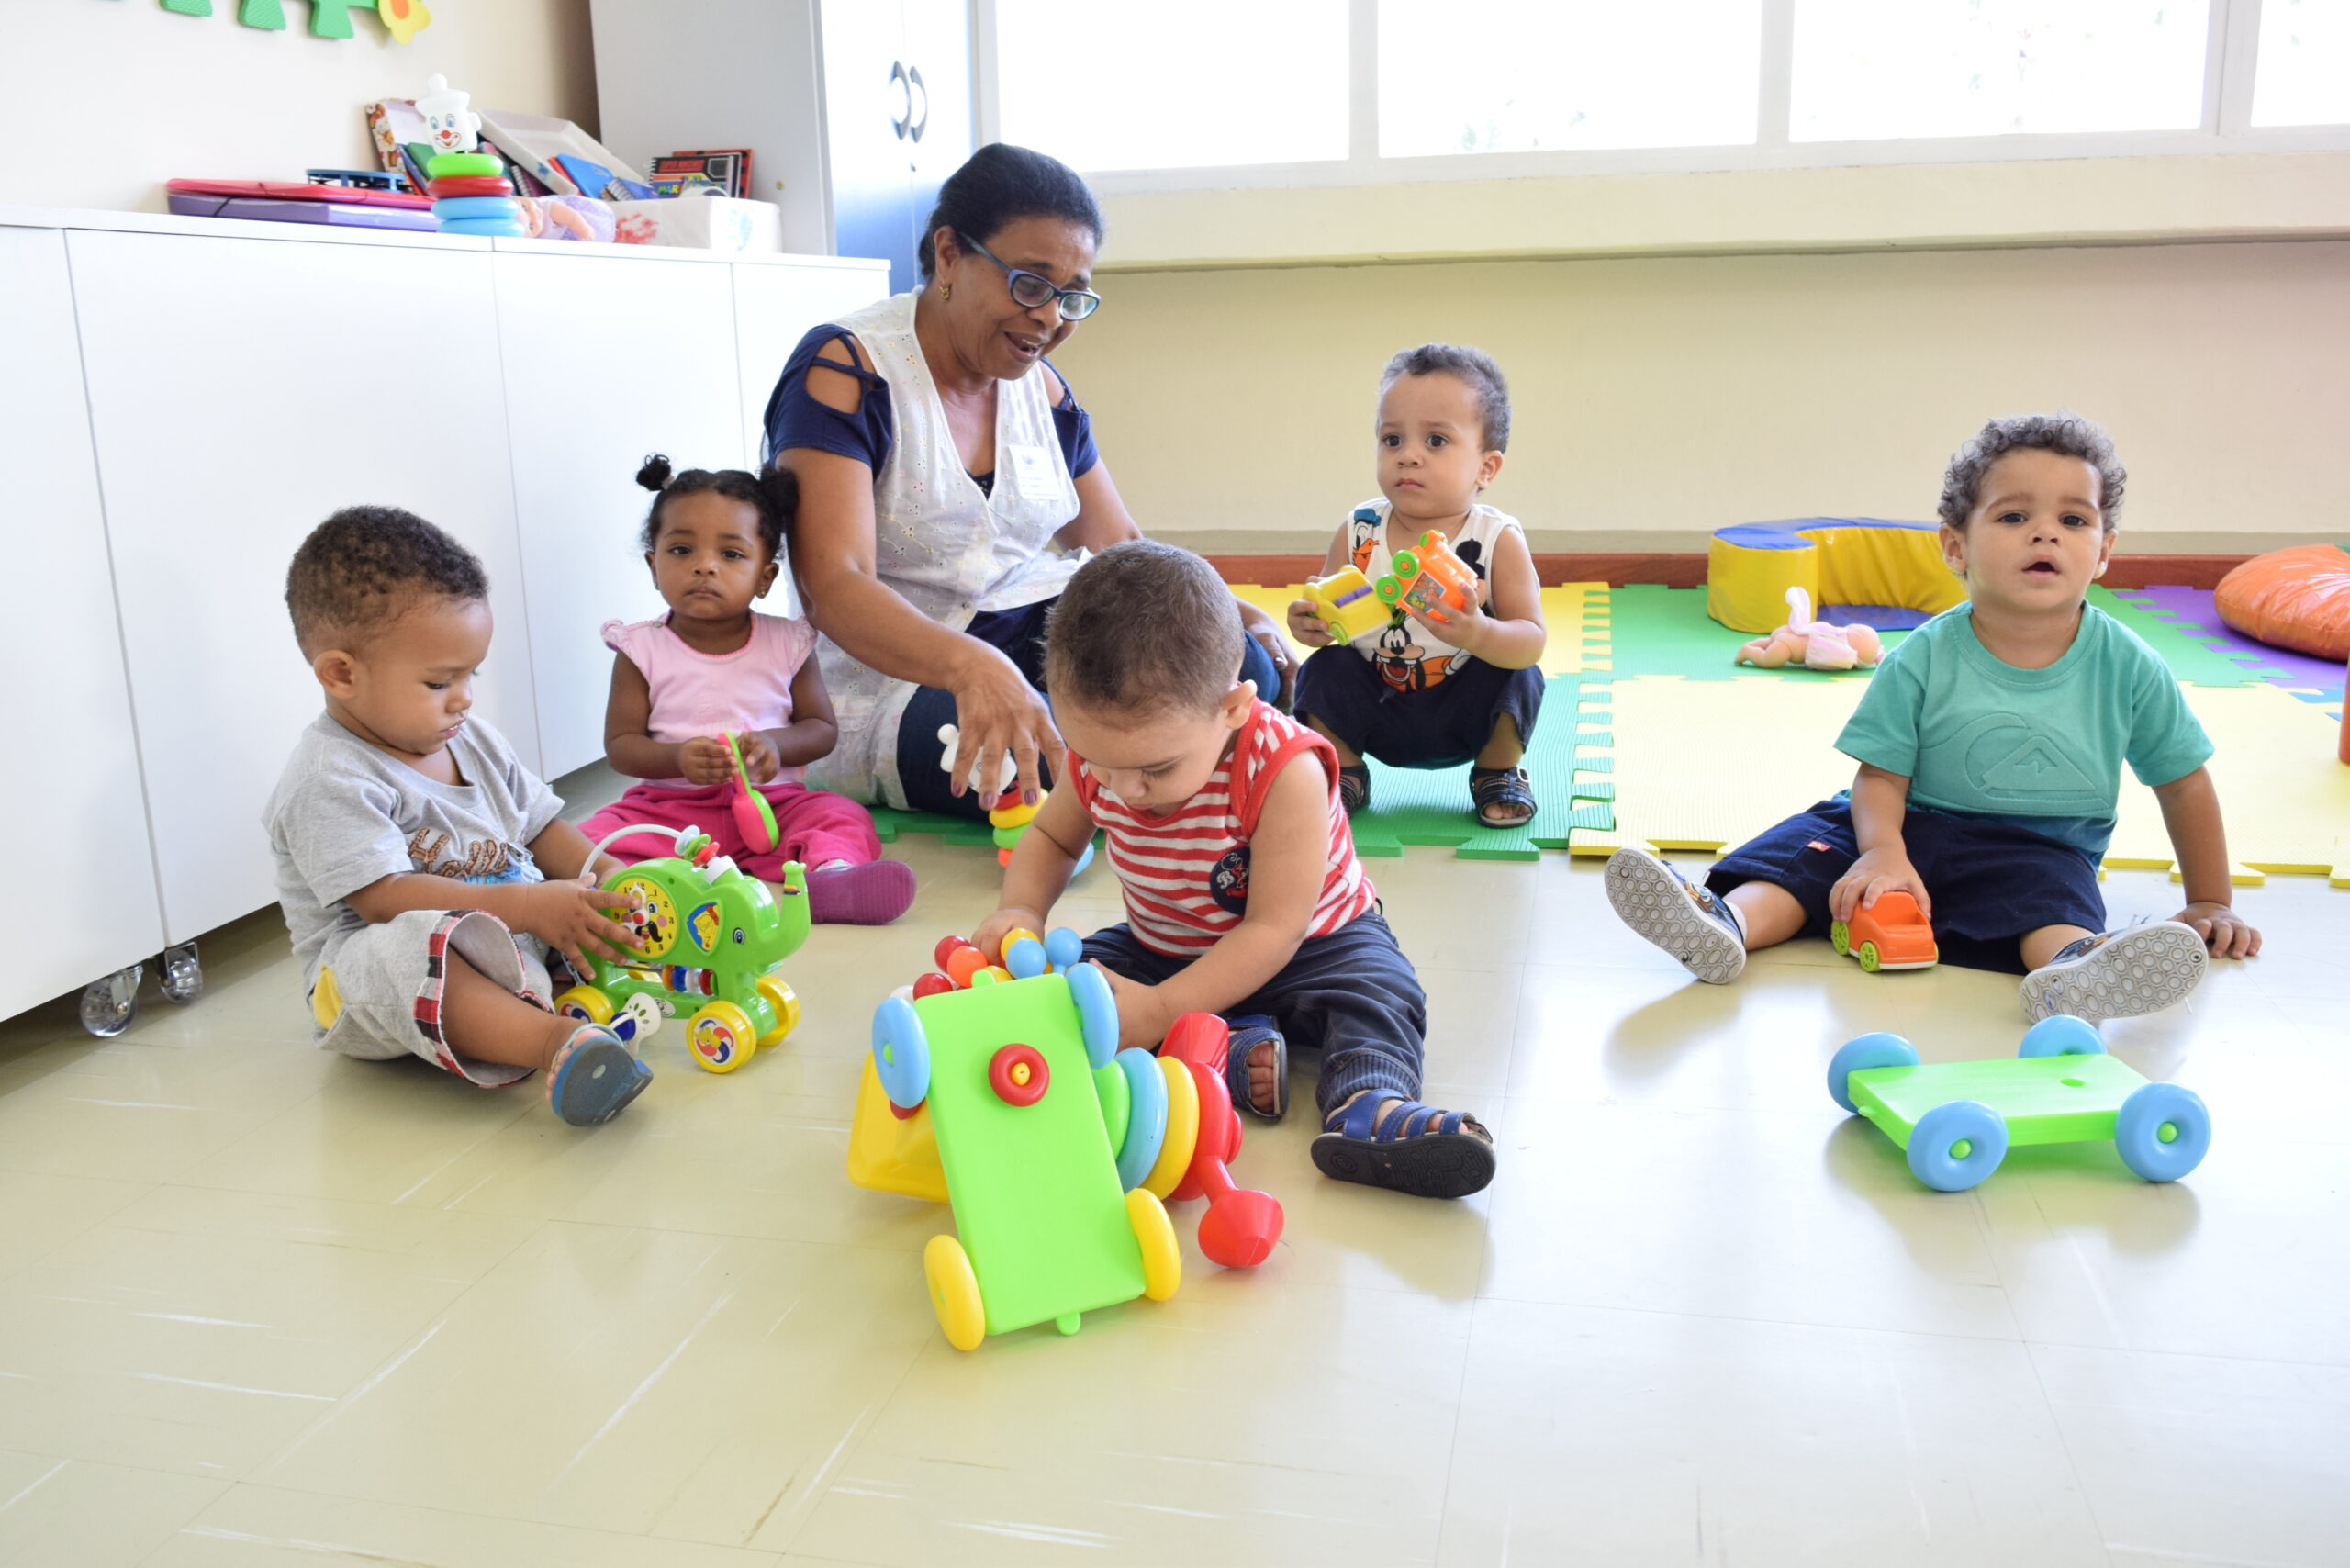 Professora de Educação Infantil sentada no chão da sala com cinco bebês sentados a sua volta brincando.